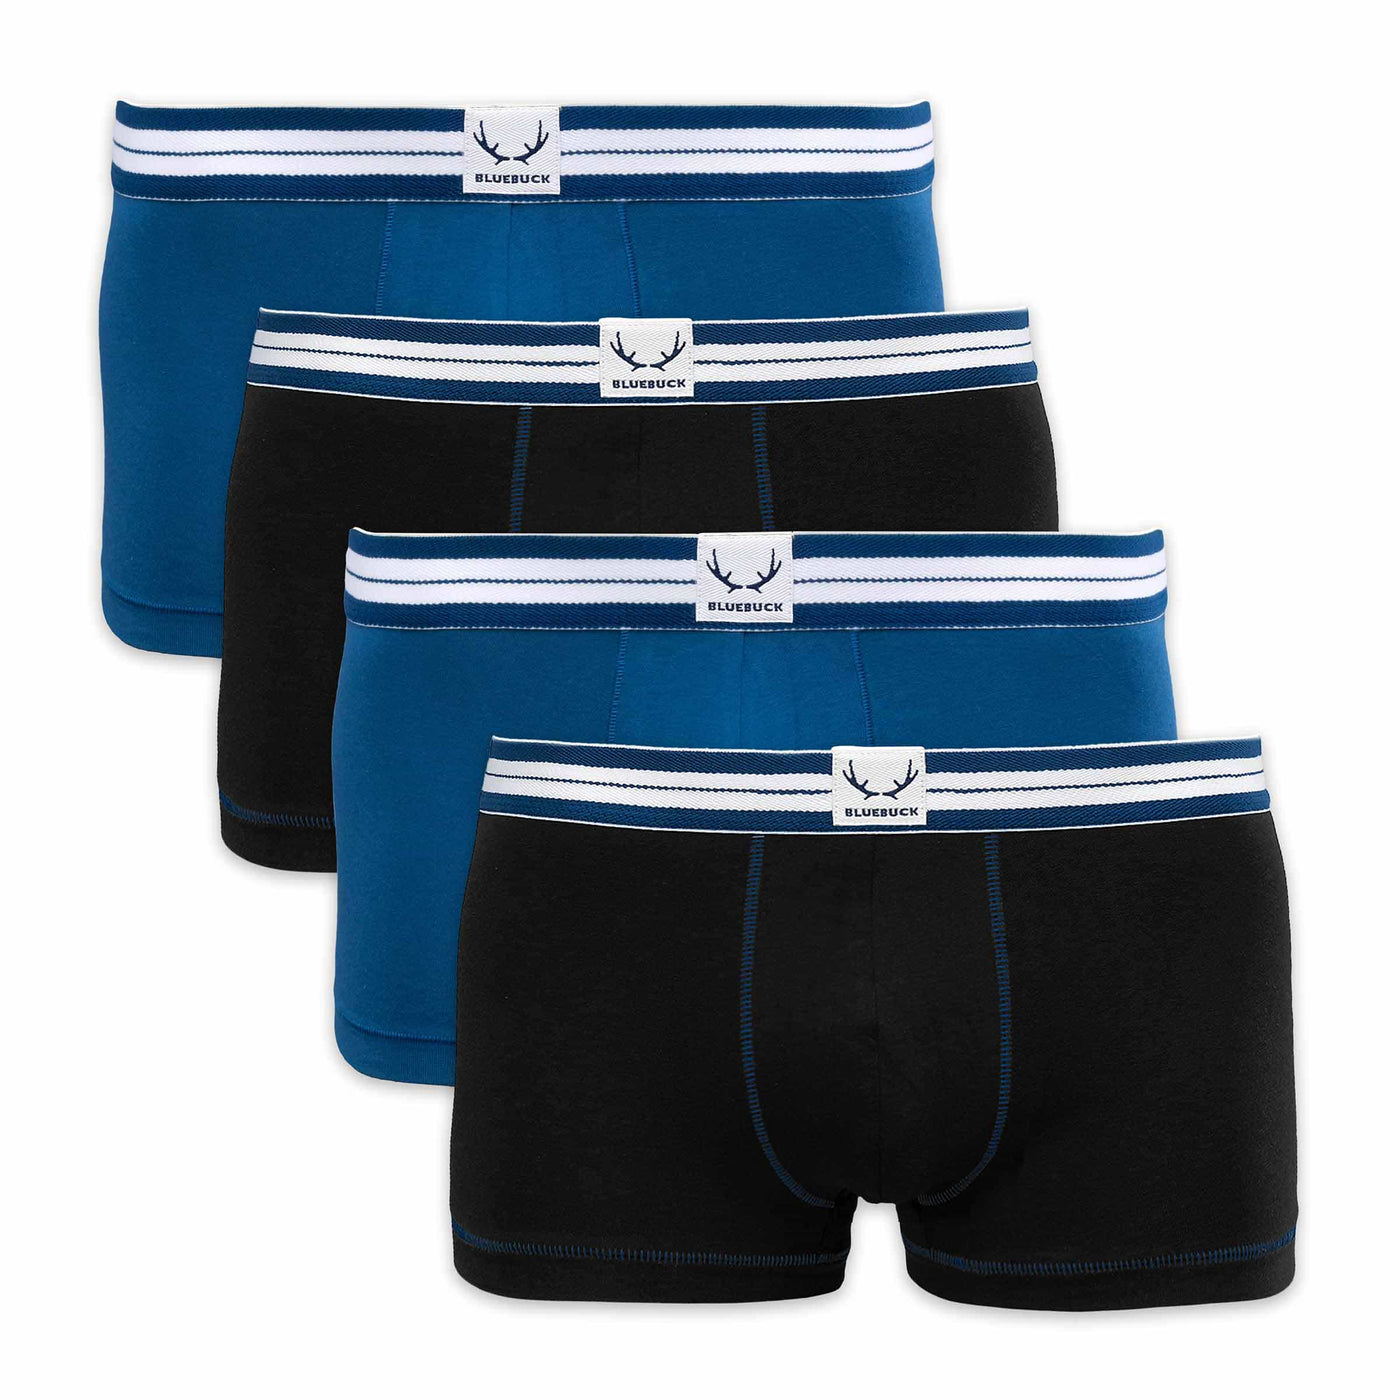 4 organic cotton trunks - black, navy blue for men